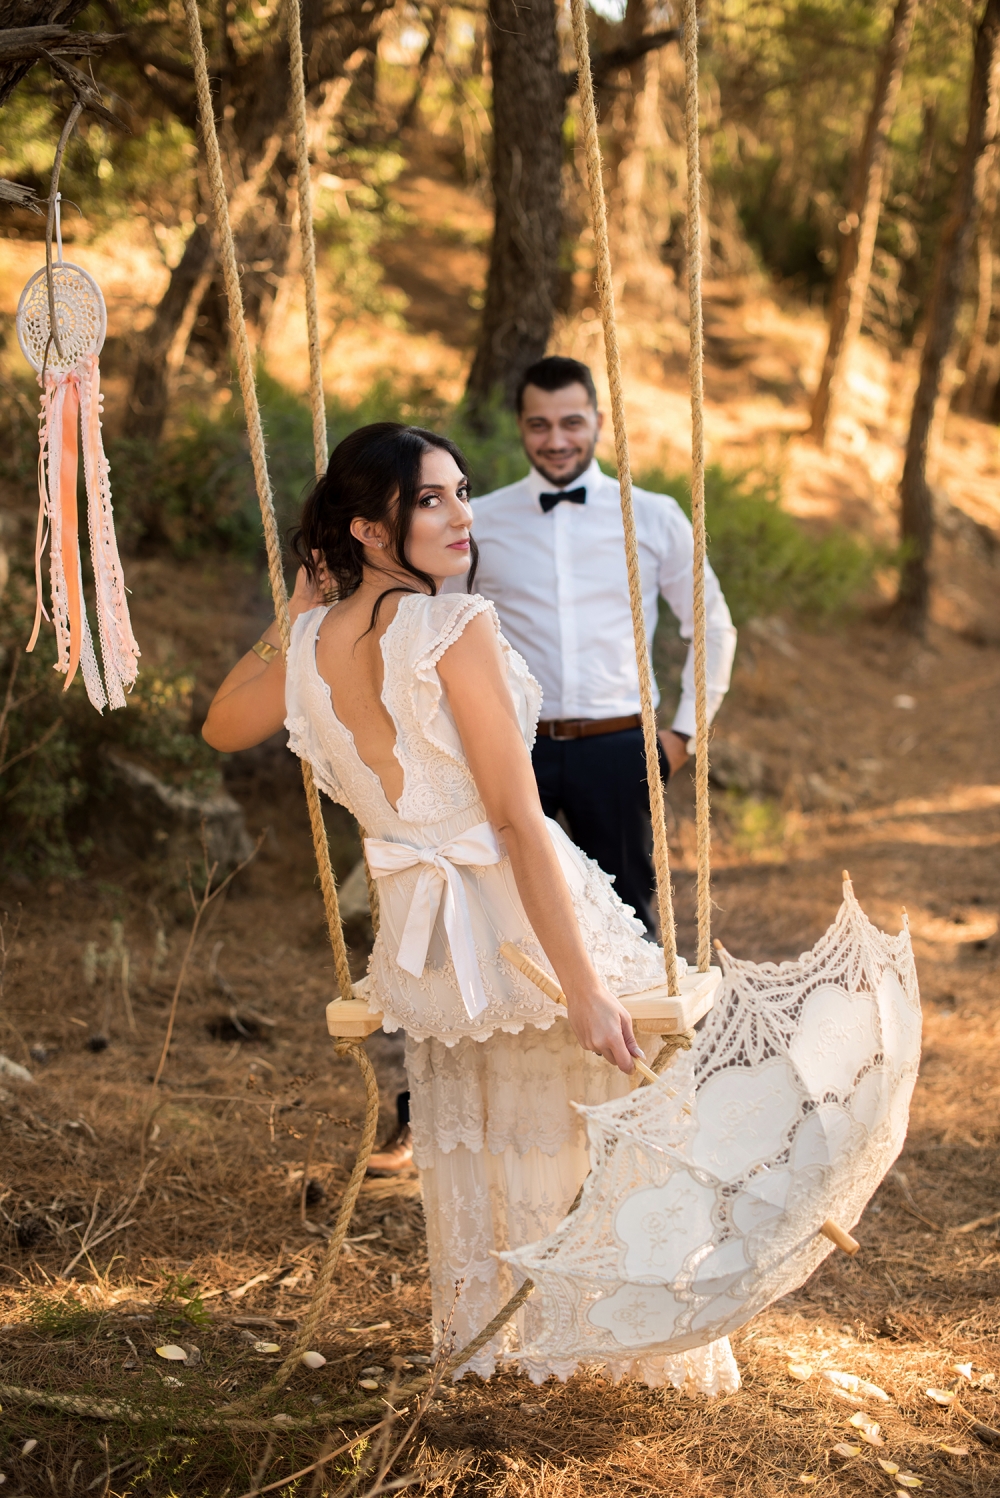 Свадьба в Греции
Автор фото: Маркос Милонакис